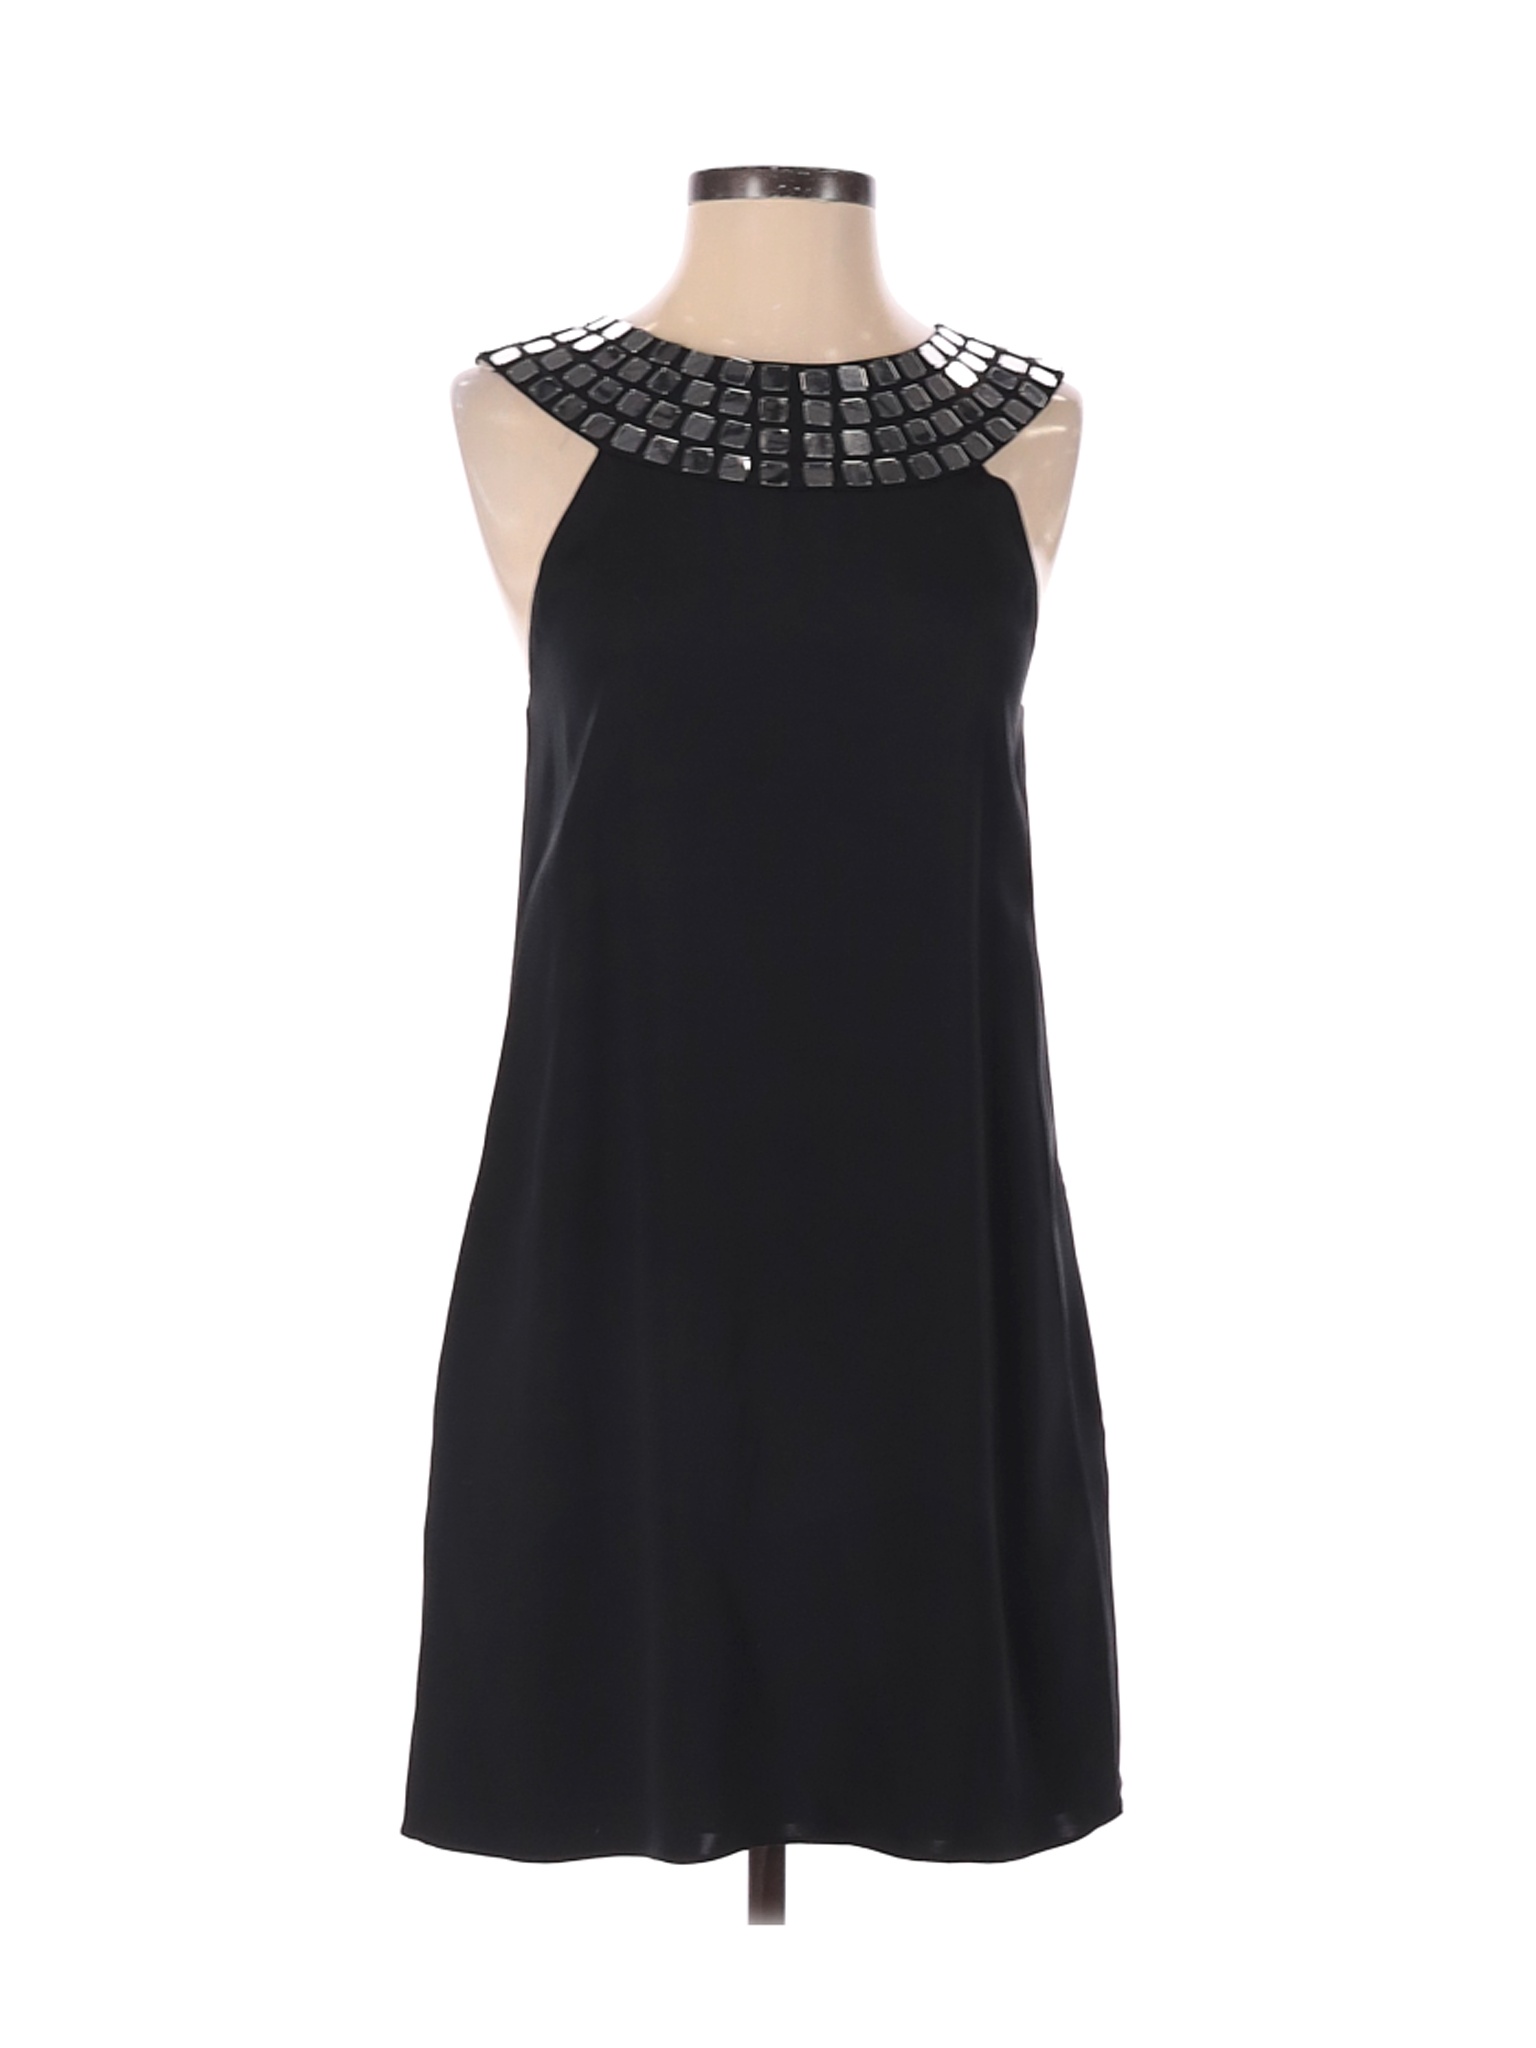 Alice + Olivia Women Black Cocktail Dress S | eBay